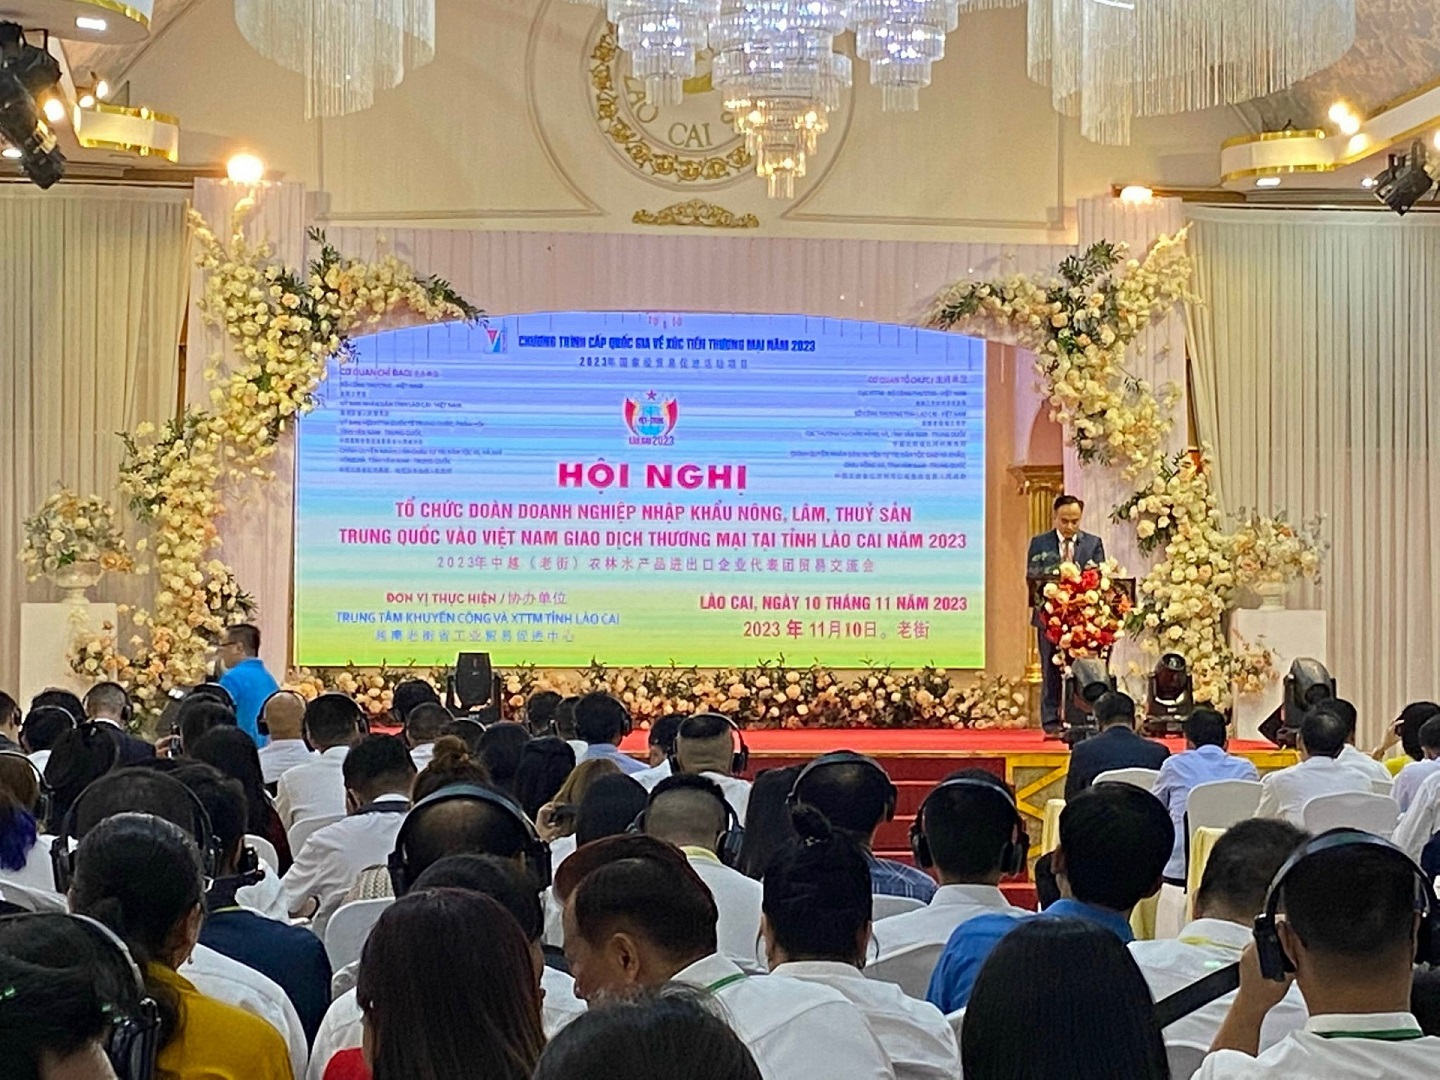 Ninh Bình tham gia Hội nghị tổ chức Đoàn doanh nghiệp nhập khẩu nông, lâm, thuỷ sản Trung Quốc vào Việt Nam giao dịch thương mại  tại tỉnh Lào Cai năm 2023